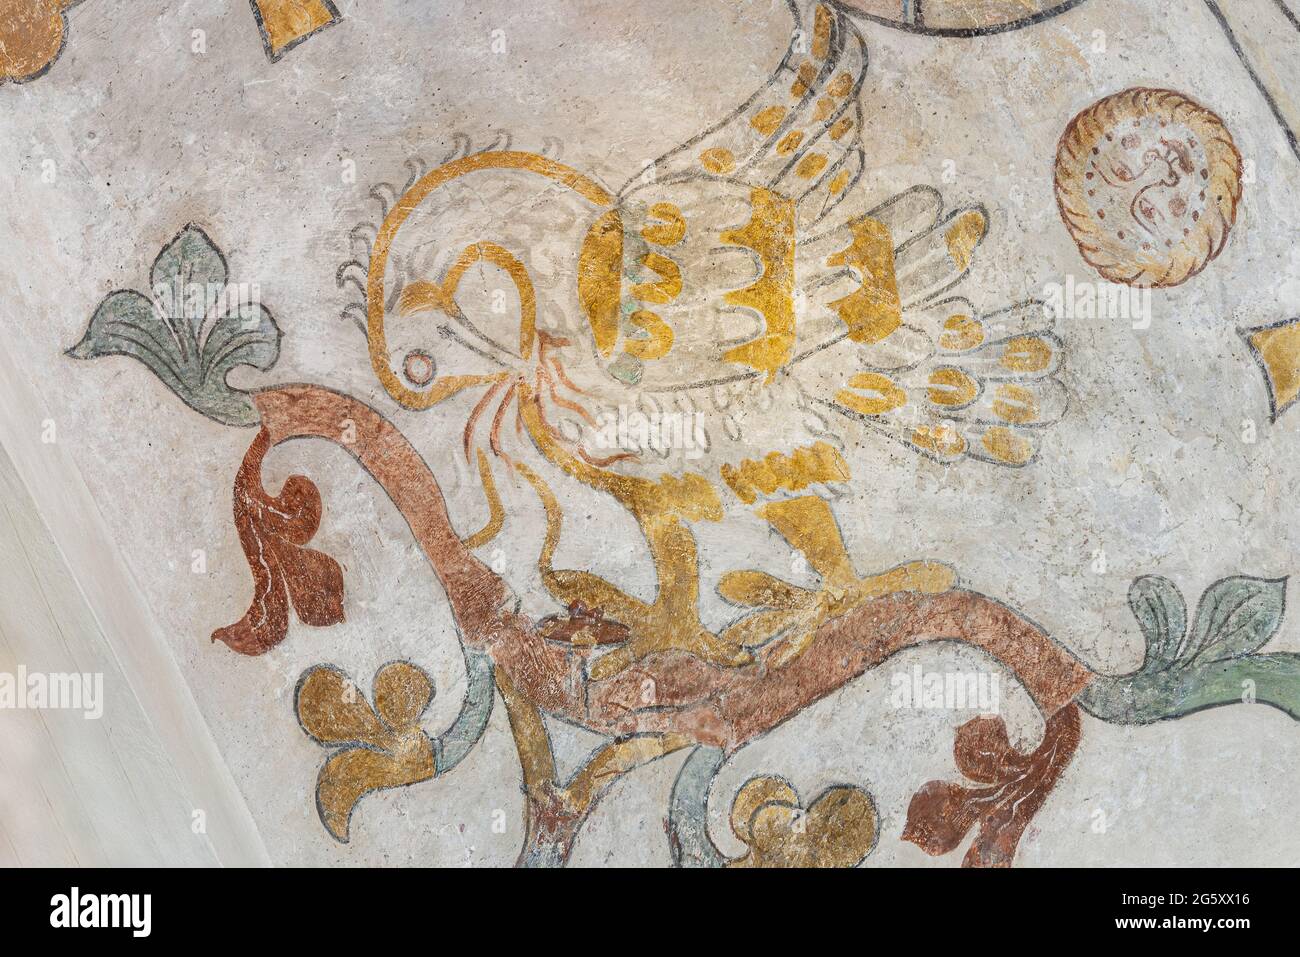 L'oiseau mythologique Phoenix nourrissant ses oisillons de sa propre blod, une ancienne fresque de l'église de Skibby, Danemark, juin 28 2021 Banque D'Images